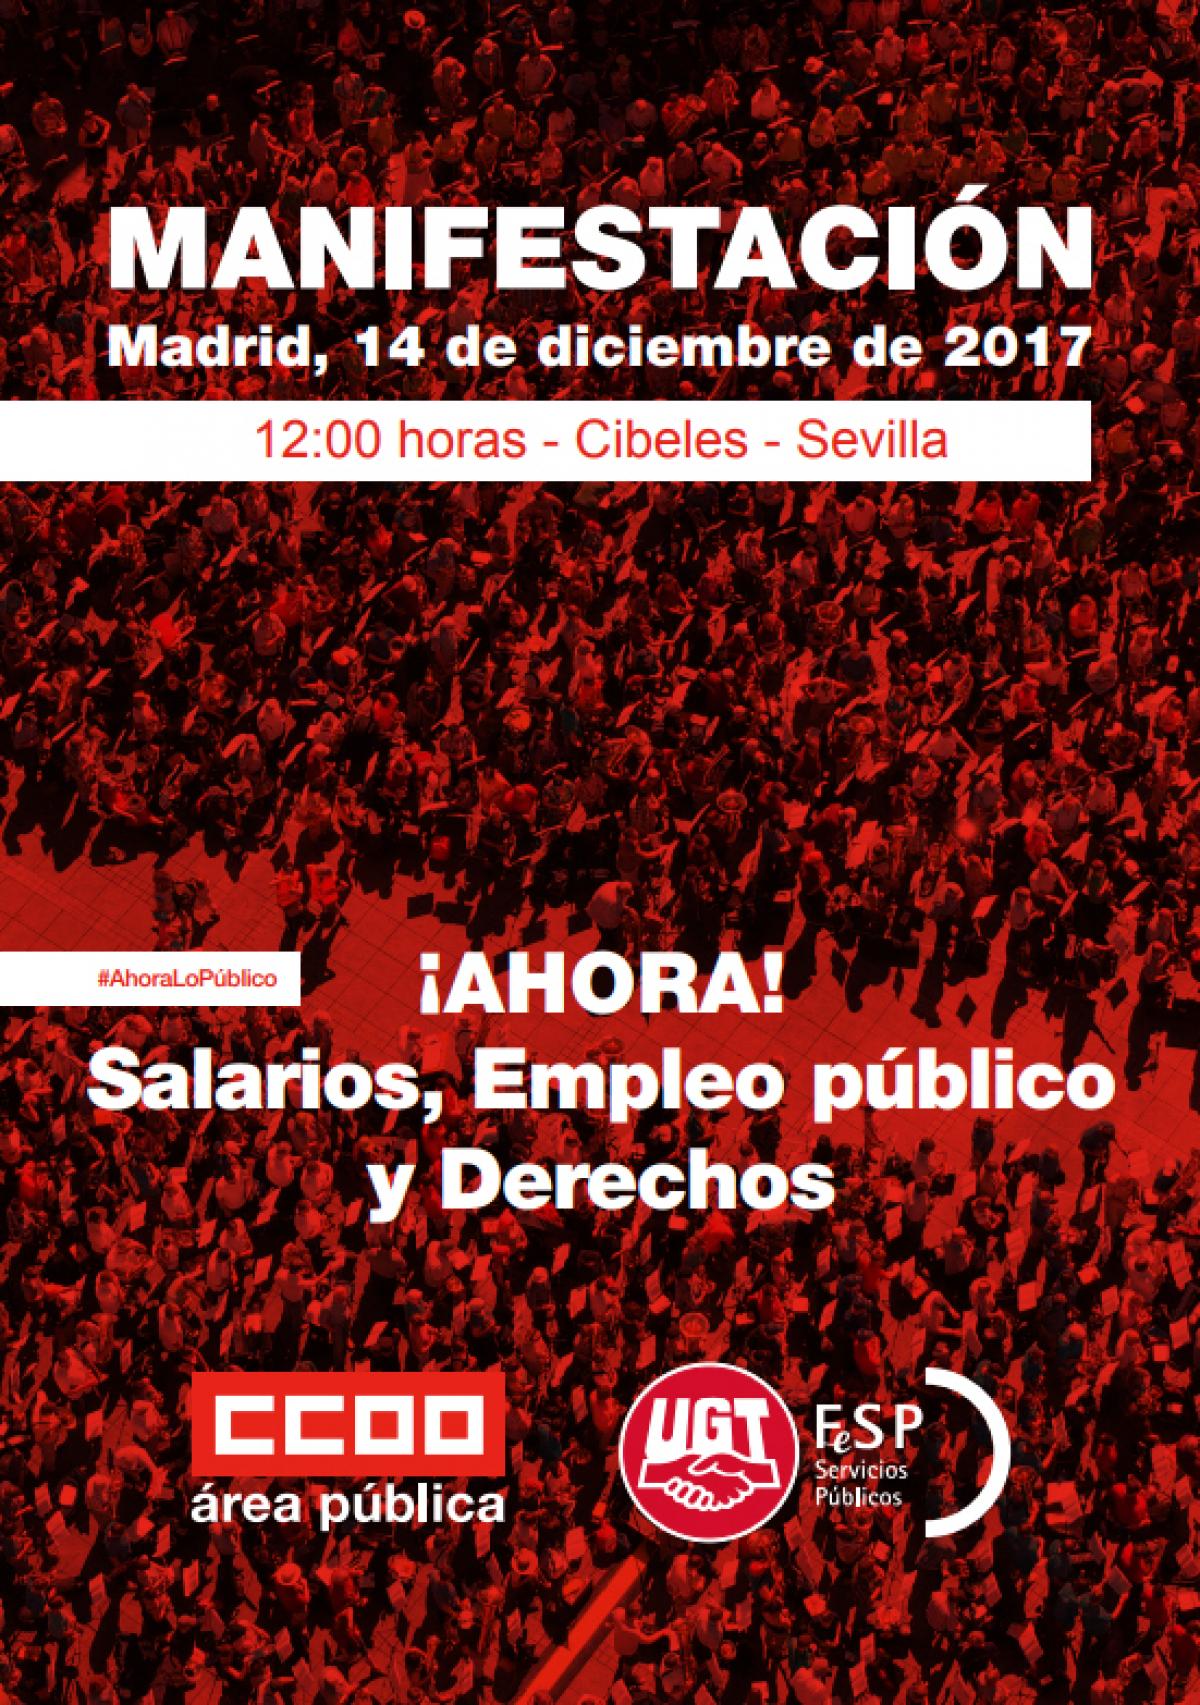 Manifestación Ahoralopublico en Madrid